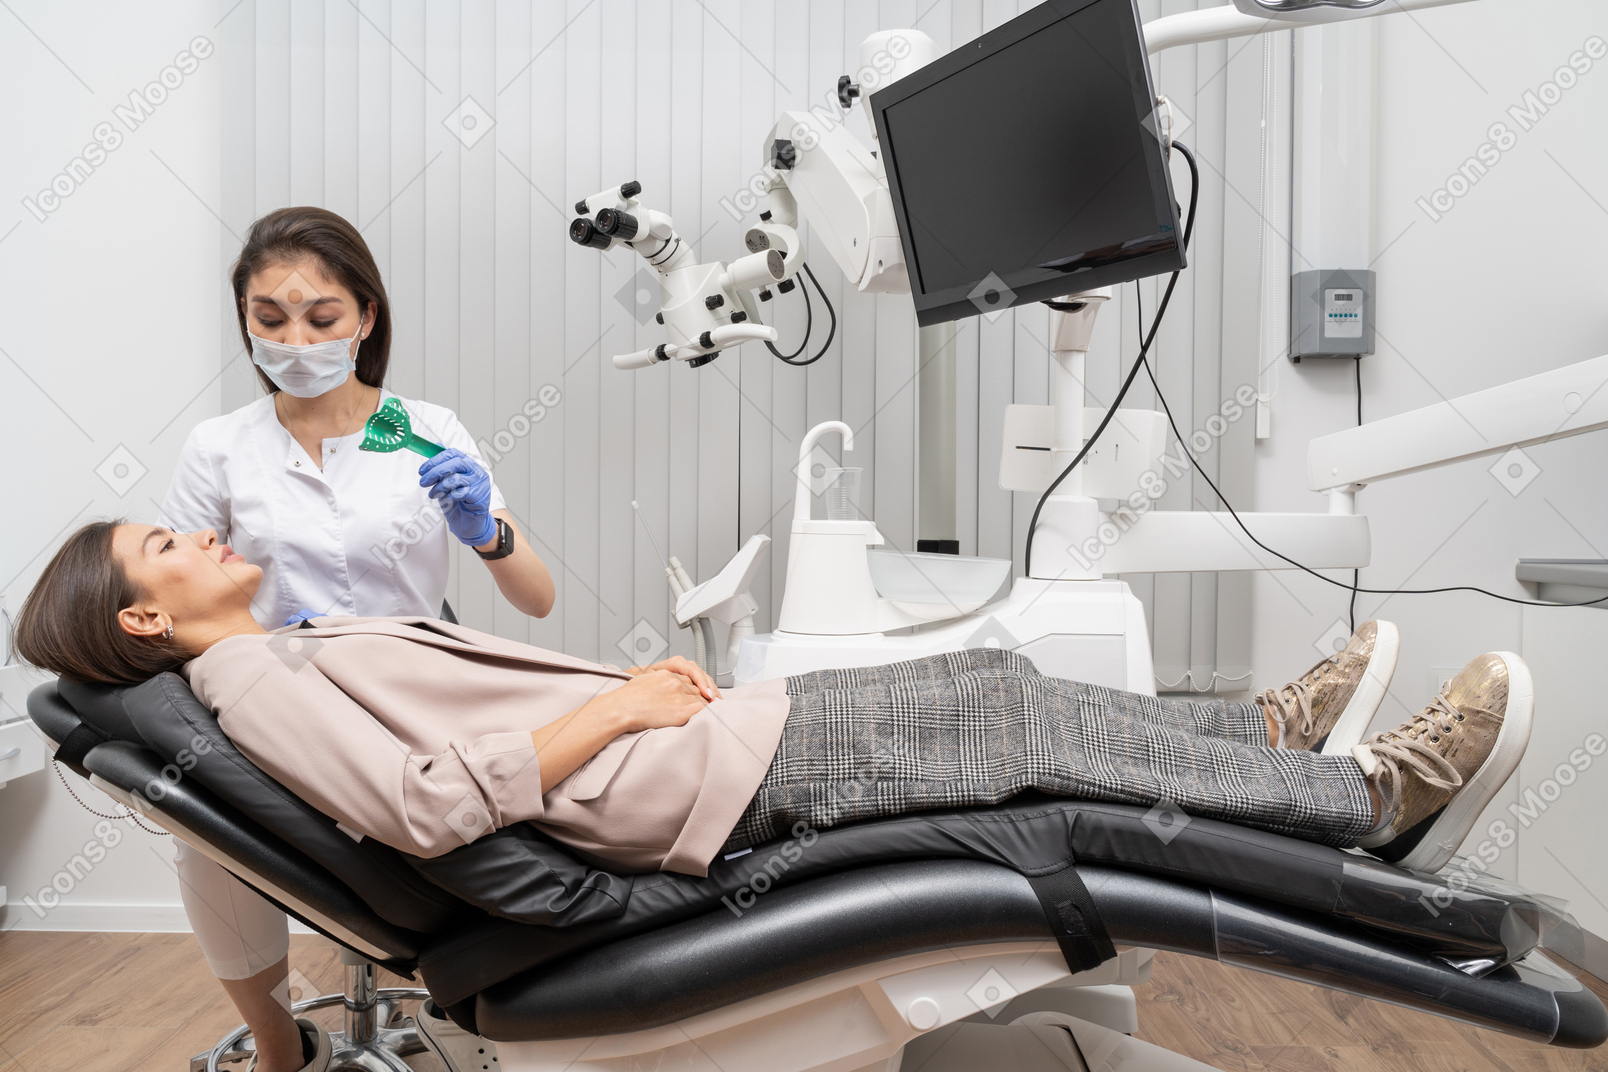 Toute la longueur d'une femme dentiste faisant un dossier dentaire à sa patiente dans une armoire d'hôpital